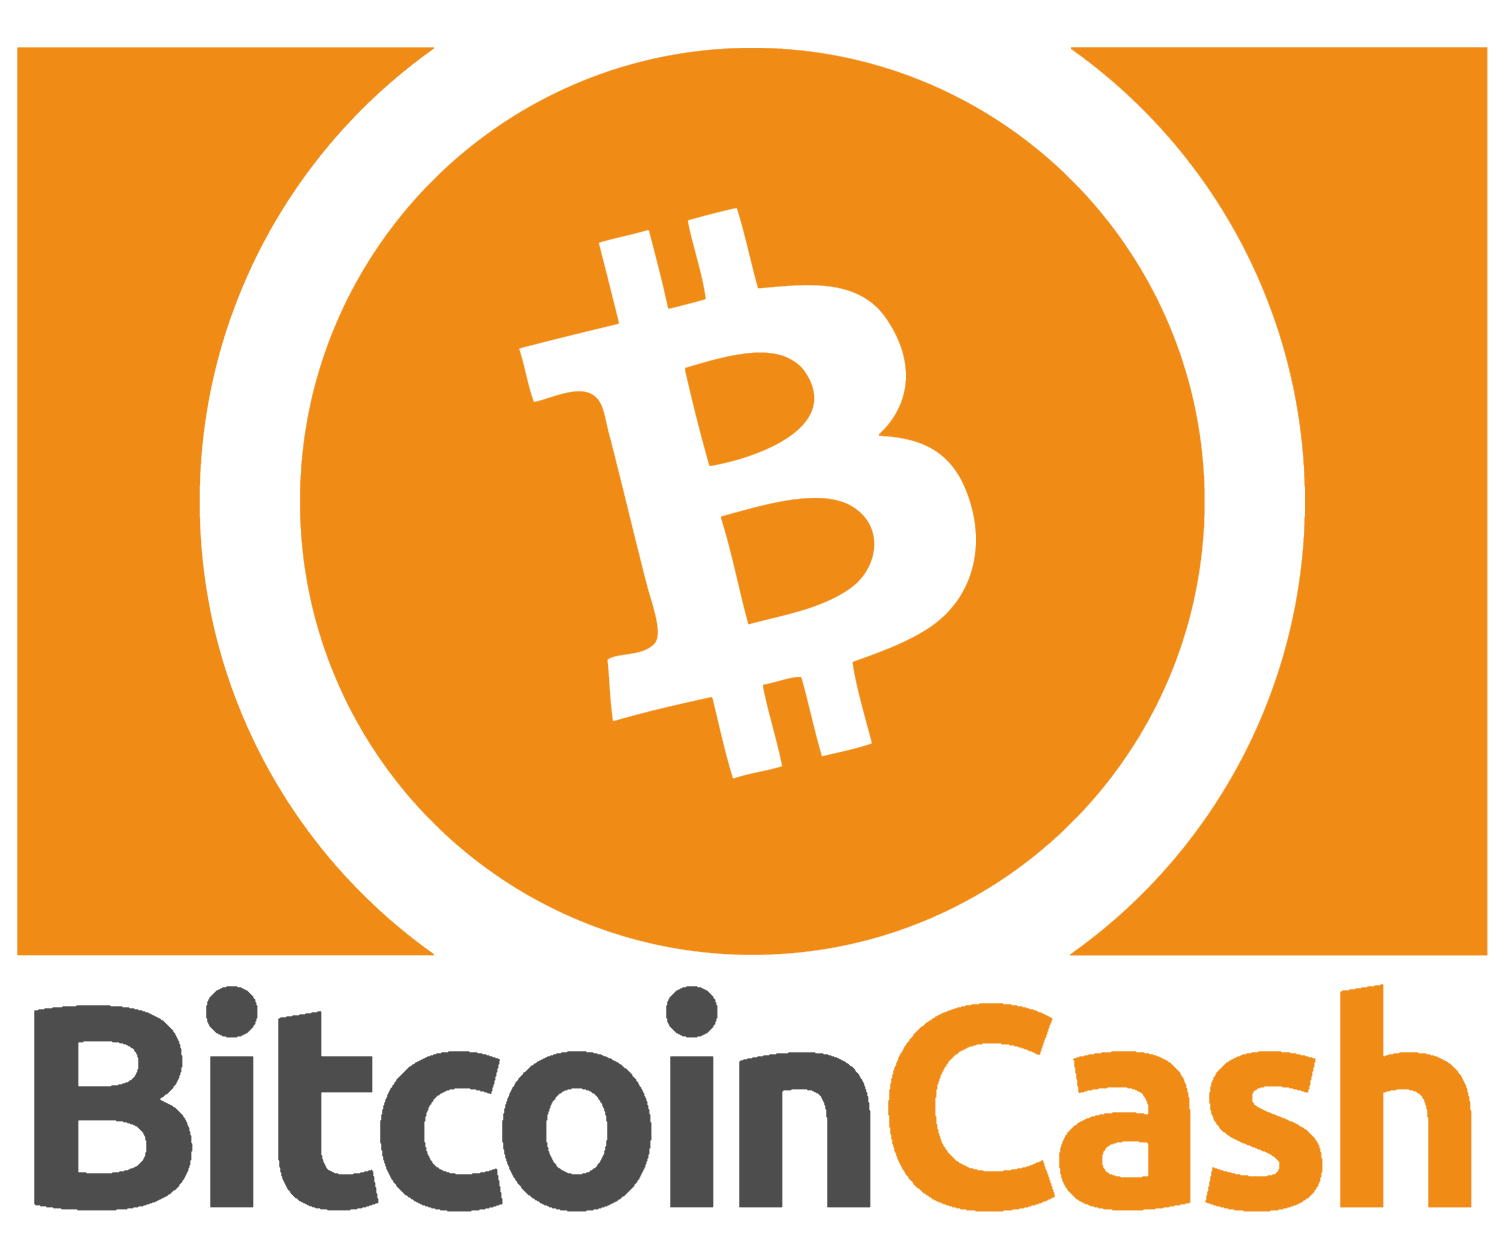 0.0005765 bitcoin cash